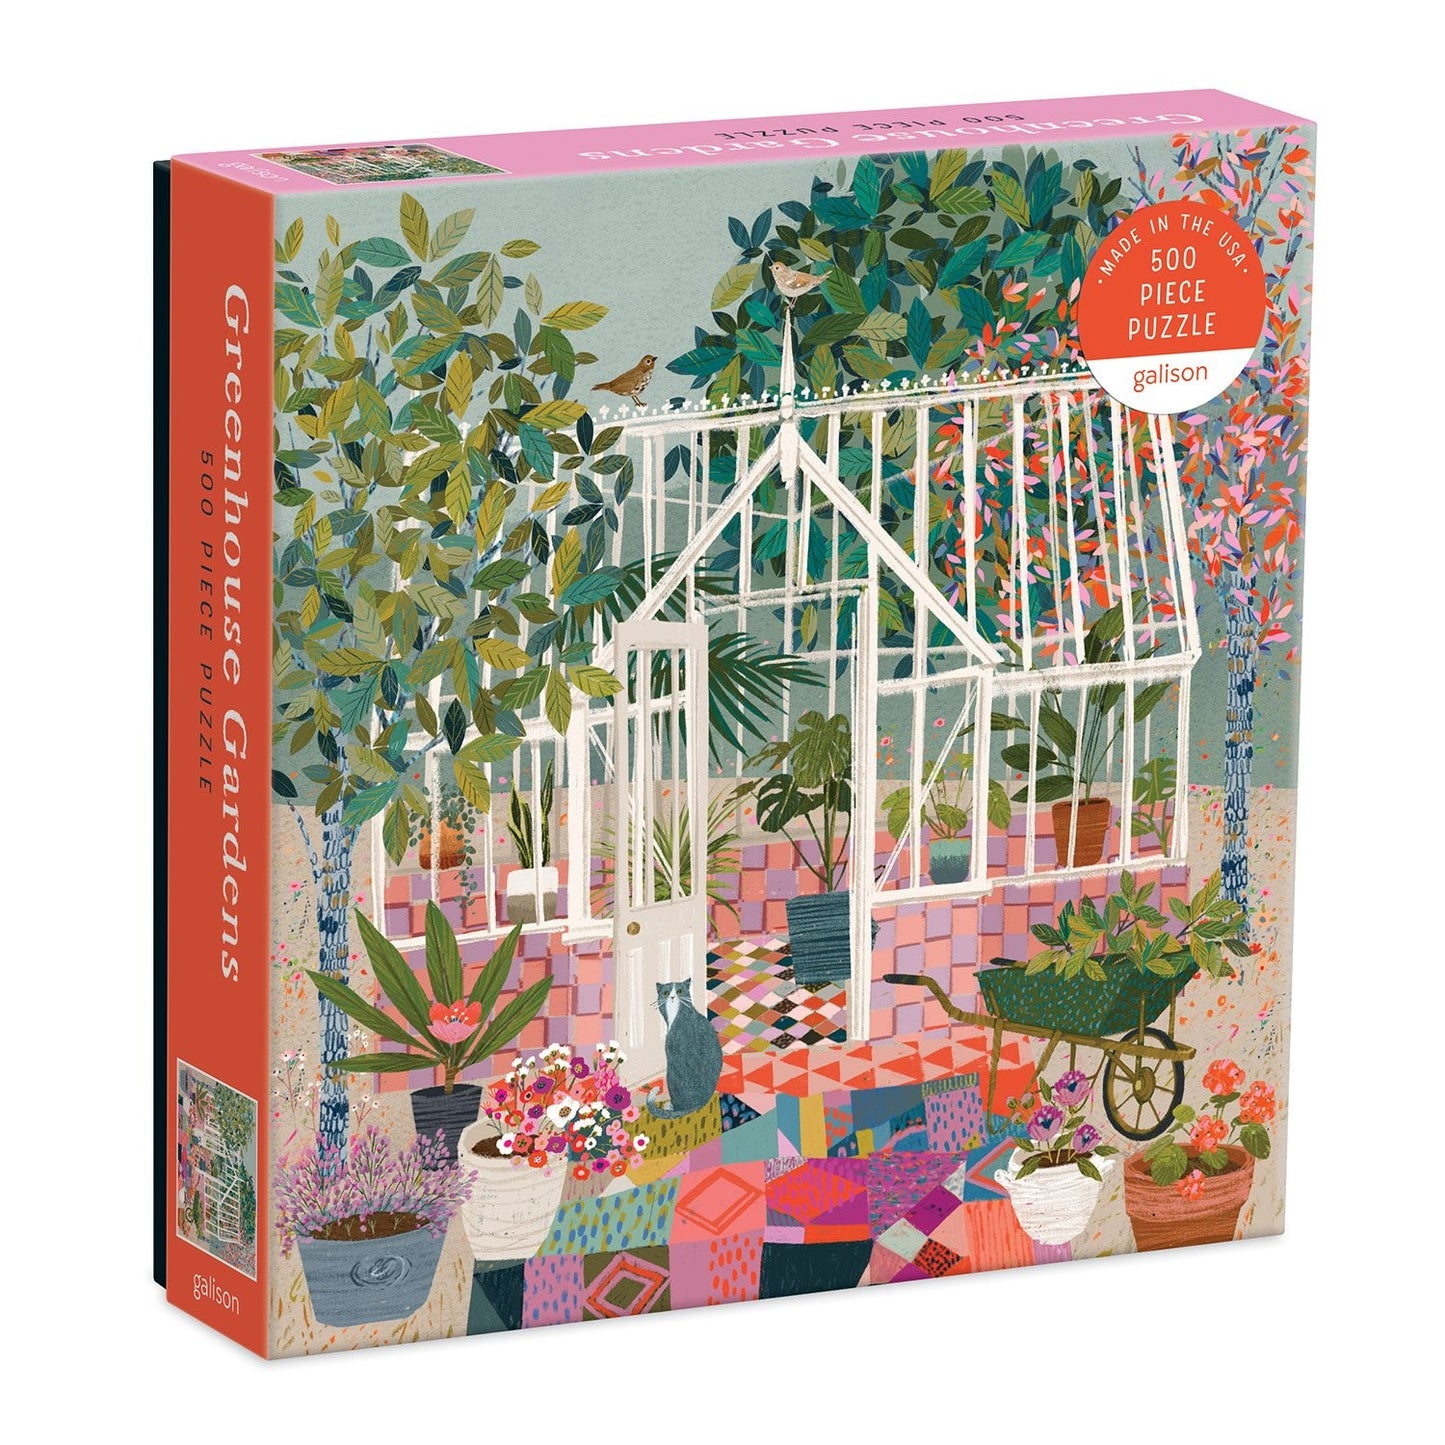 Greenhouse Gardens 500 Piece Jigsaw Puzzle